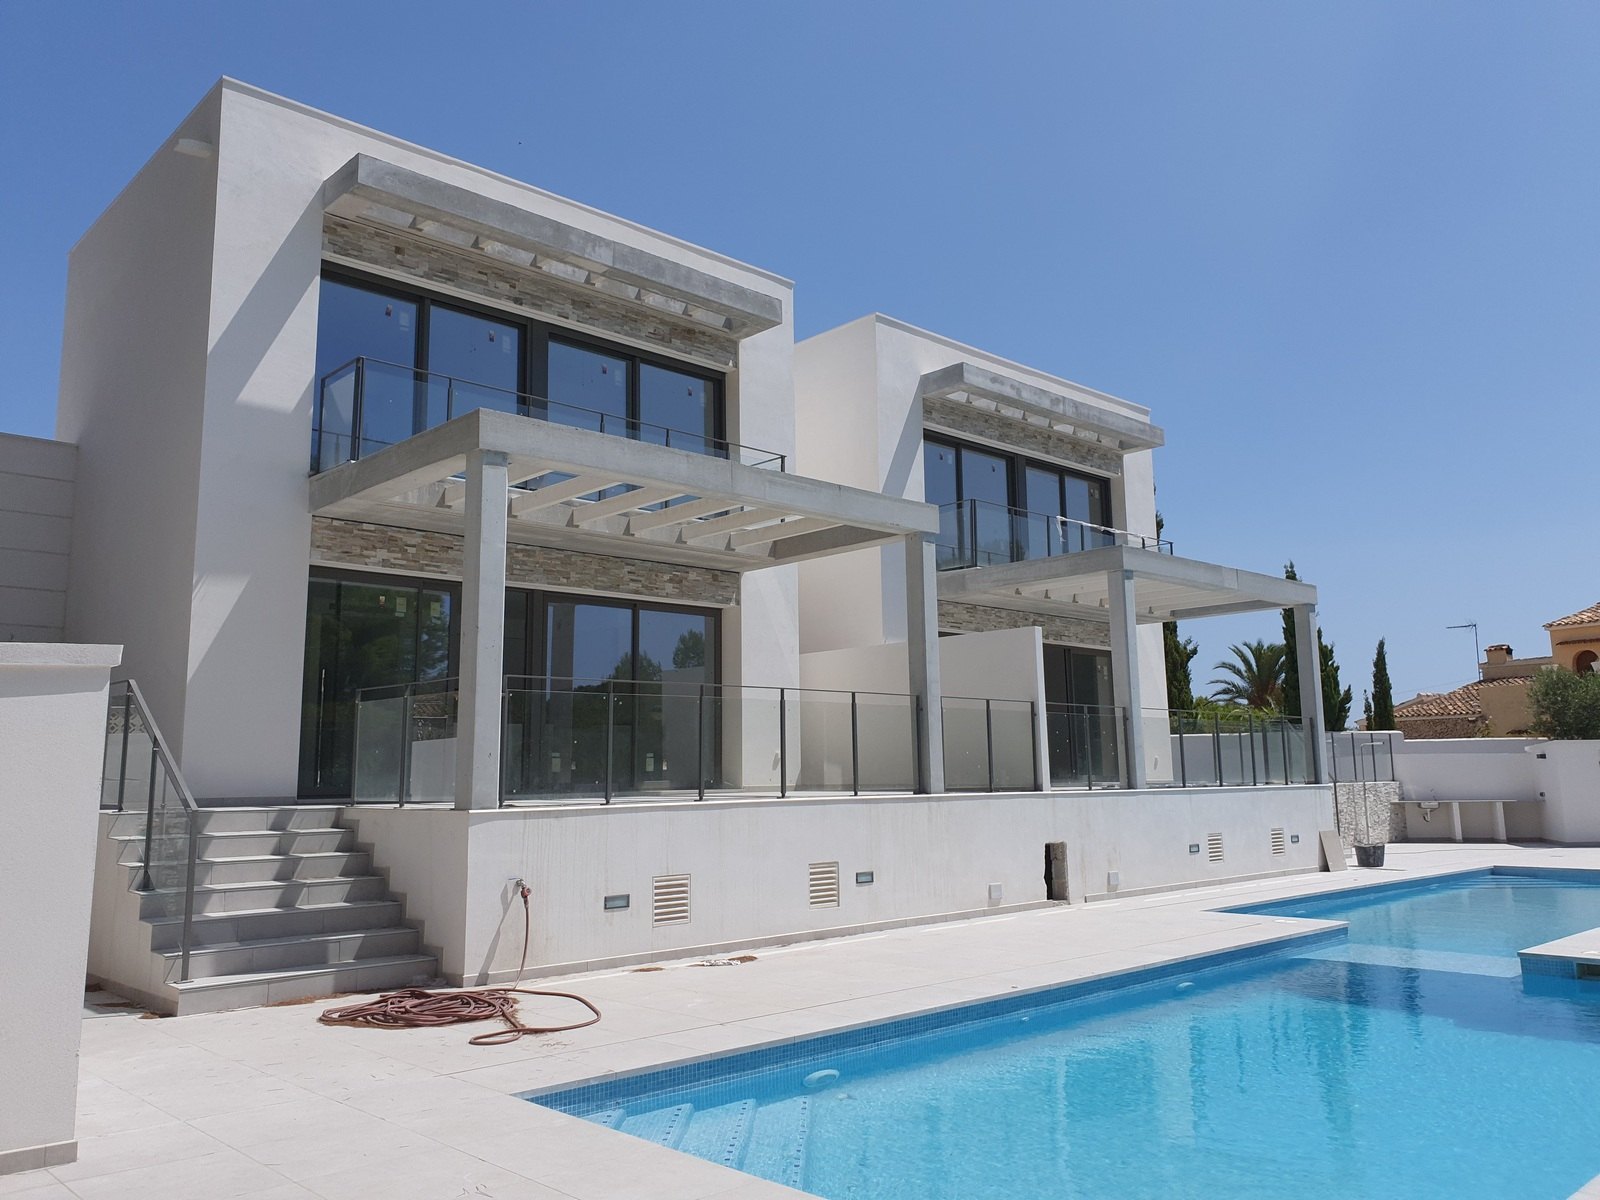 Villa/Couplement nouvellement construit avec piscine à Moraira.